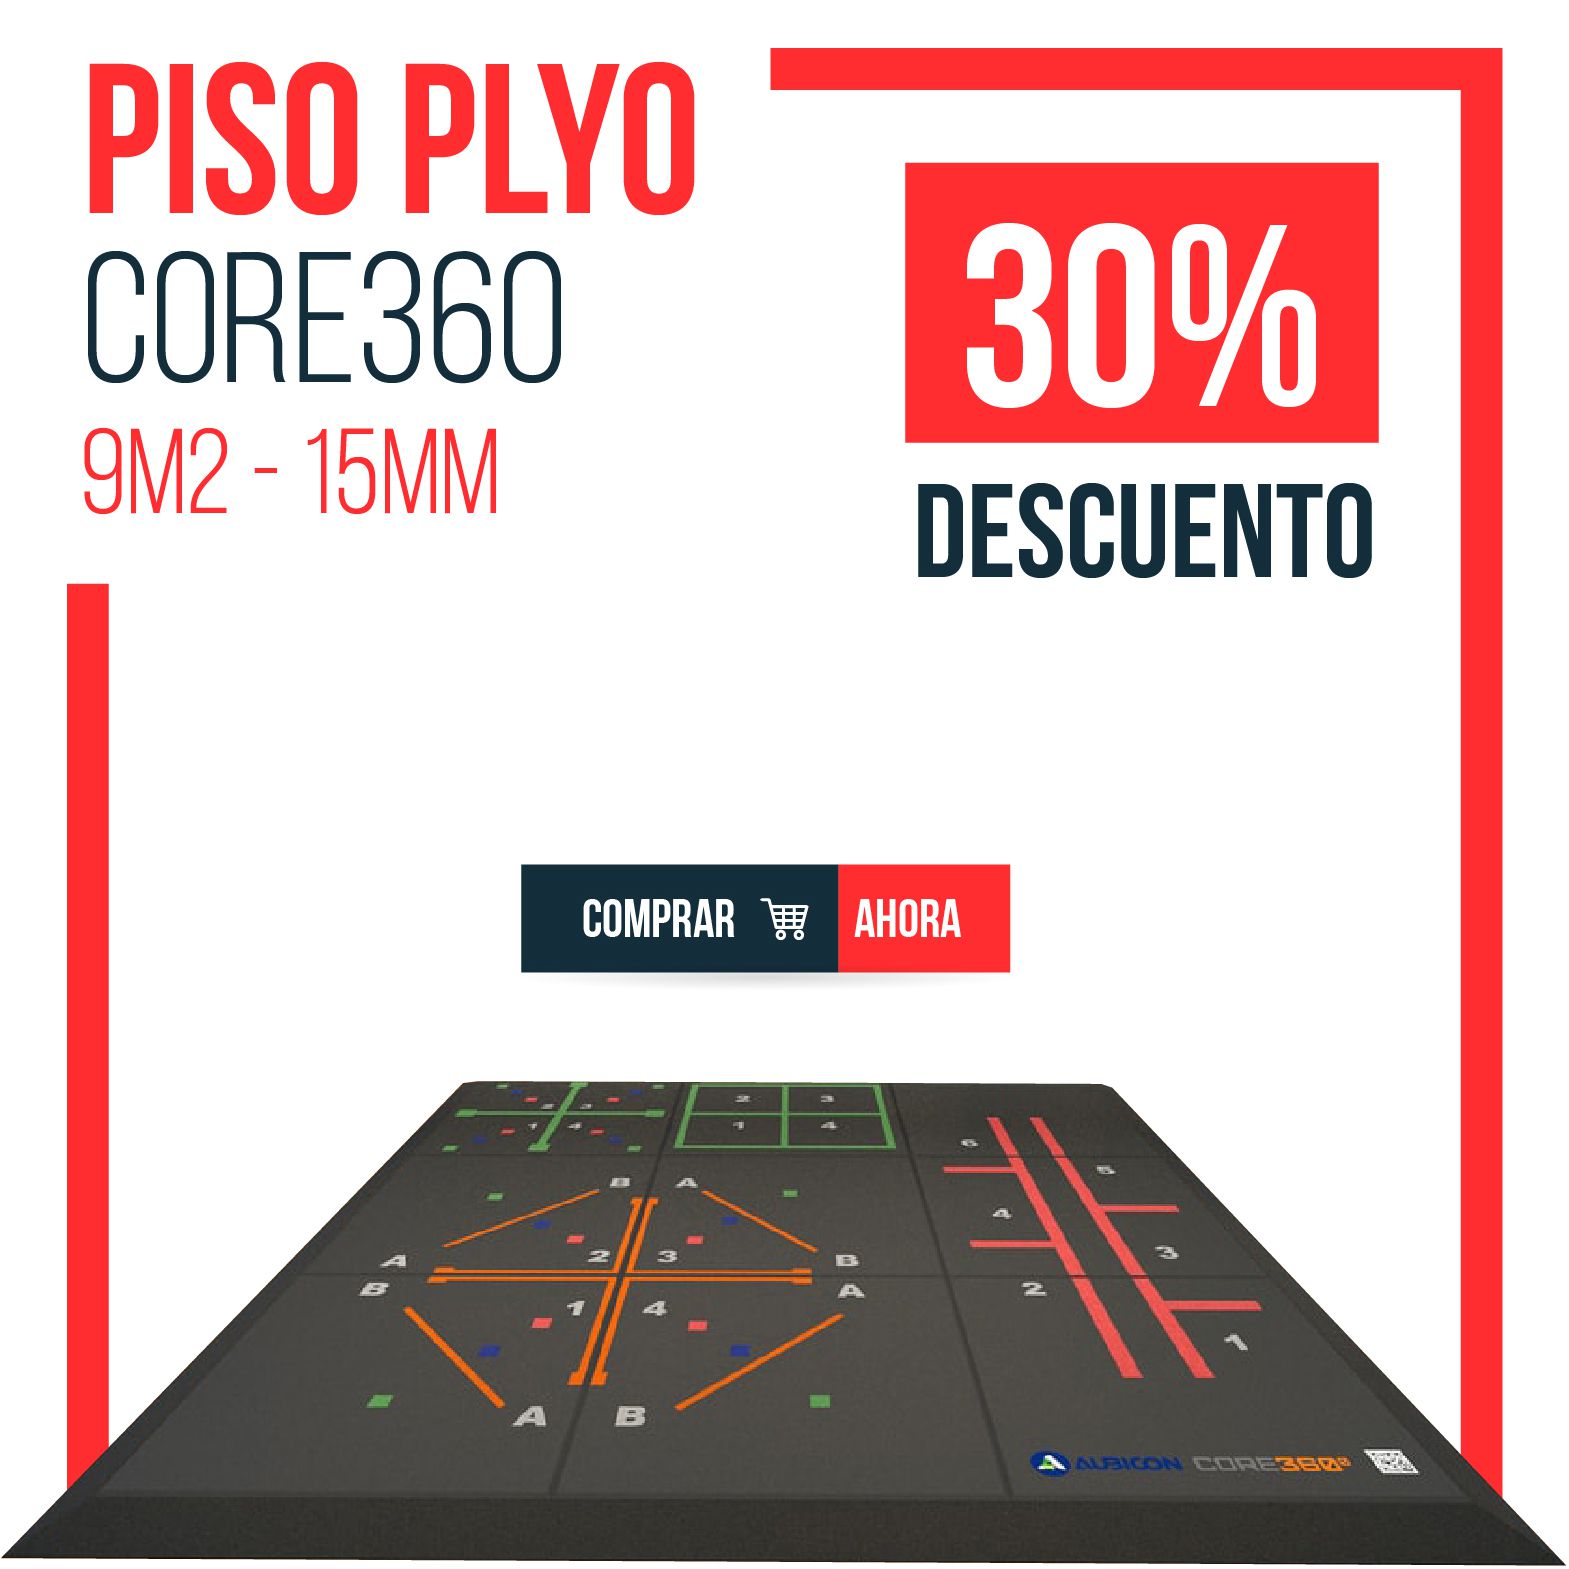 Piso Plyo Core360 (9m2 - 15mm)